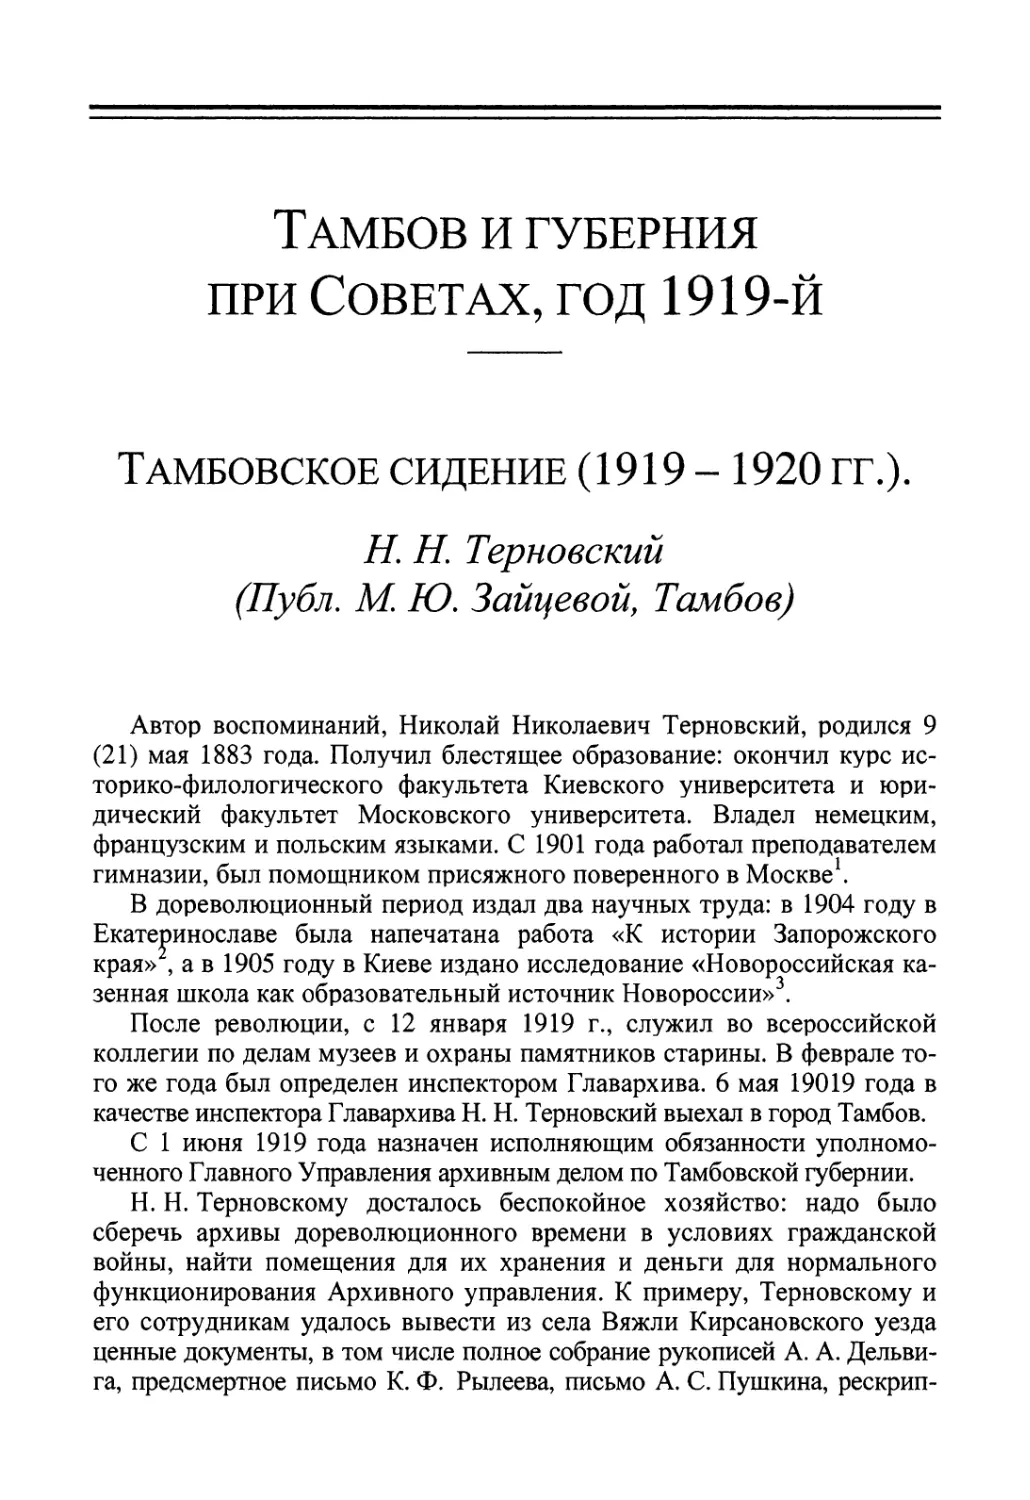 Тамбов и губерния при Советах, год 1919-й